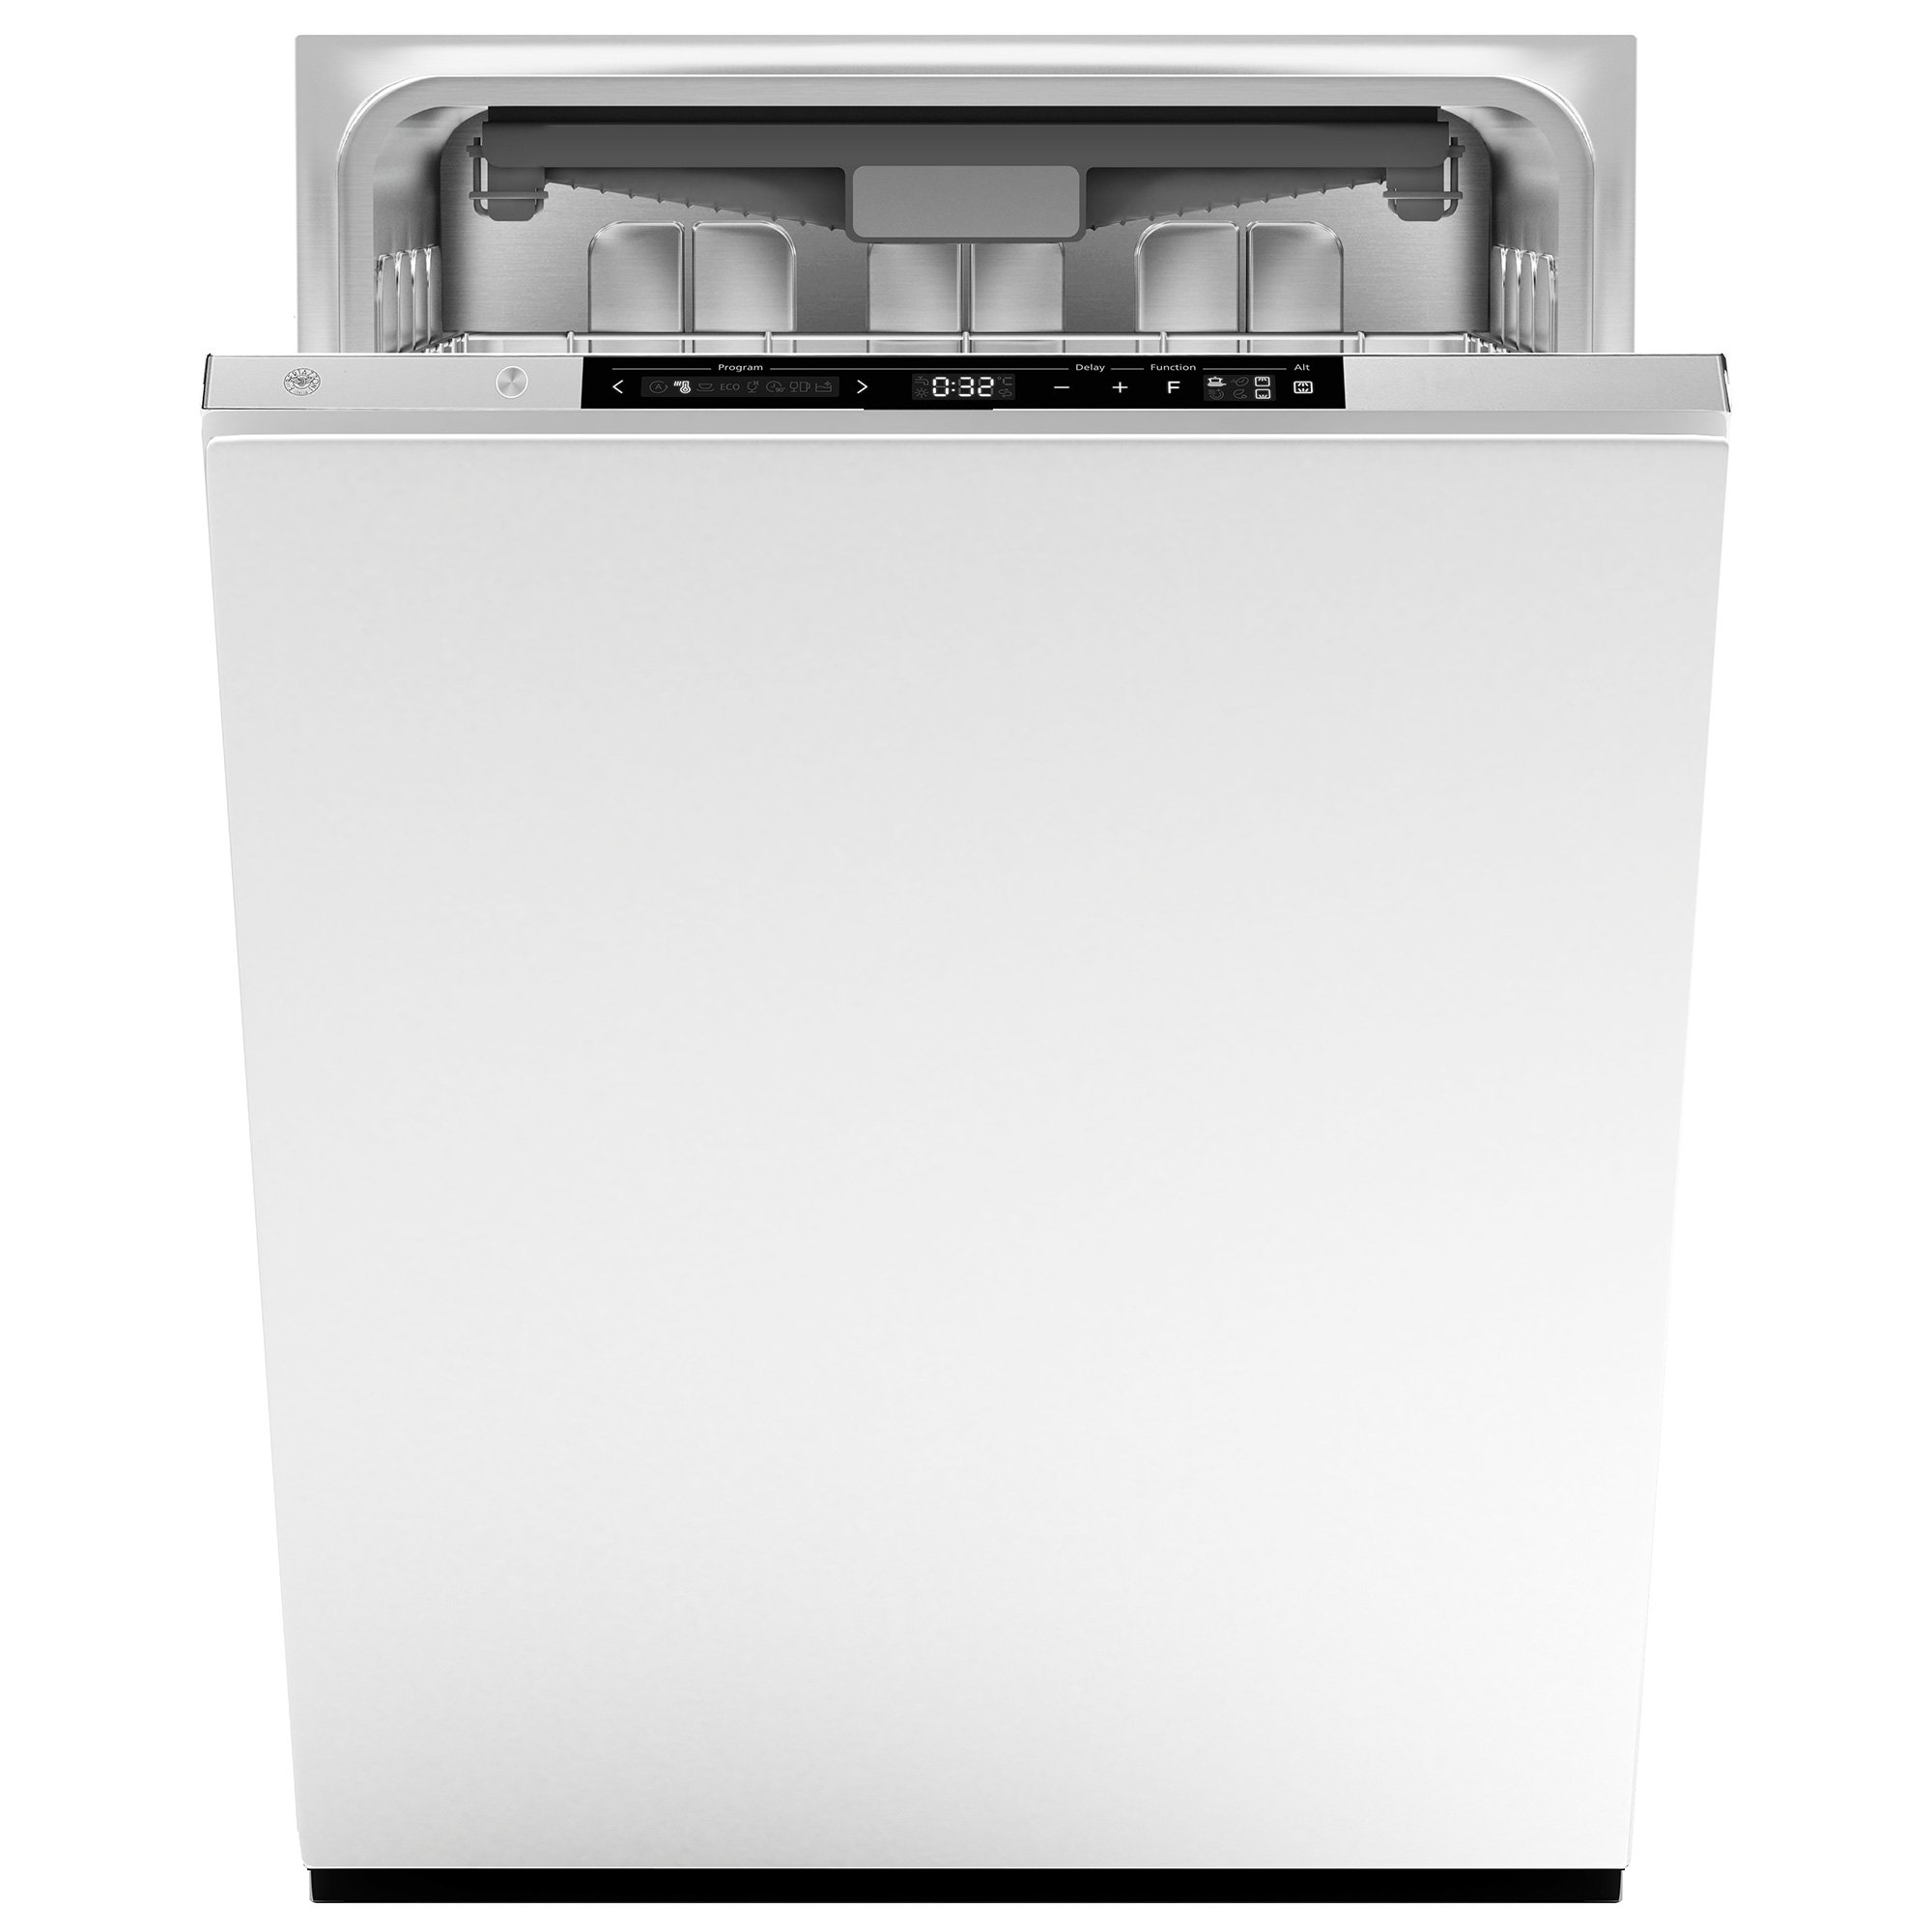 #1 på vores liste over opvaskemaskiner er Opvaskemaskine